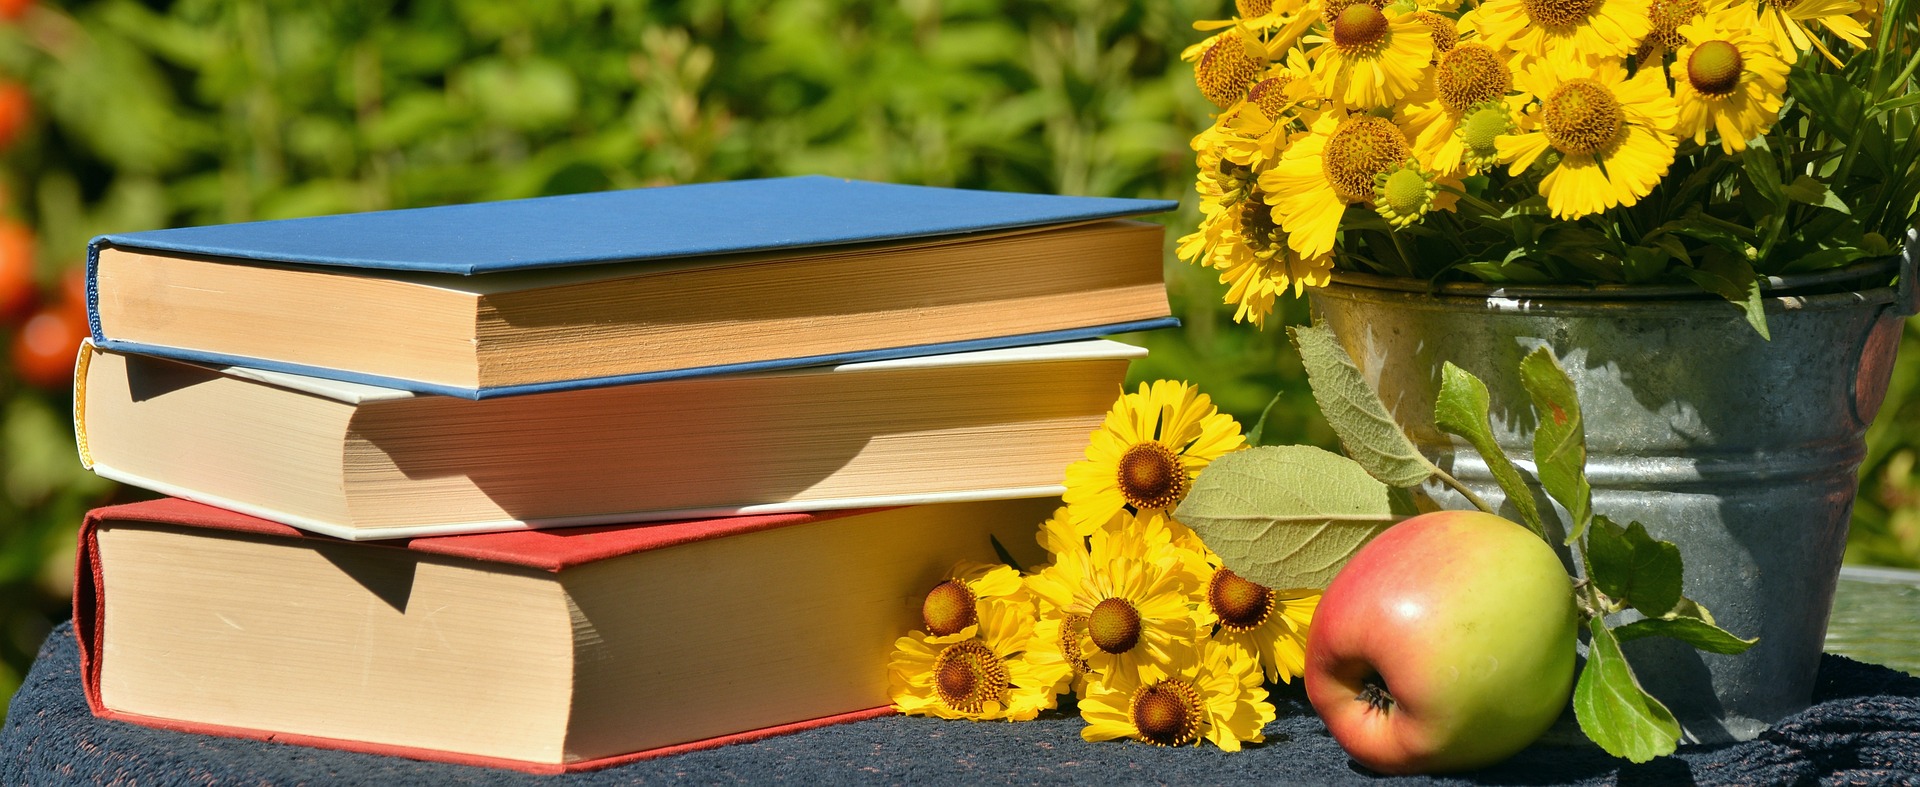 Foto von drei Büchern, gelben Blumen in einem Blecheimer und einem Apfel